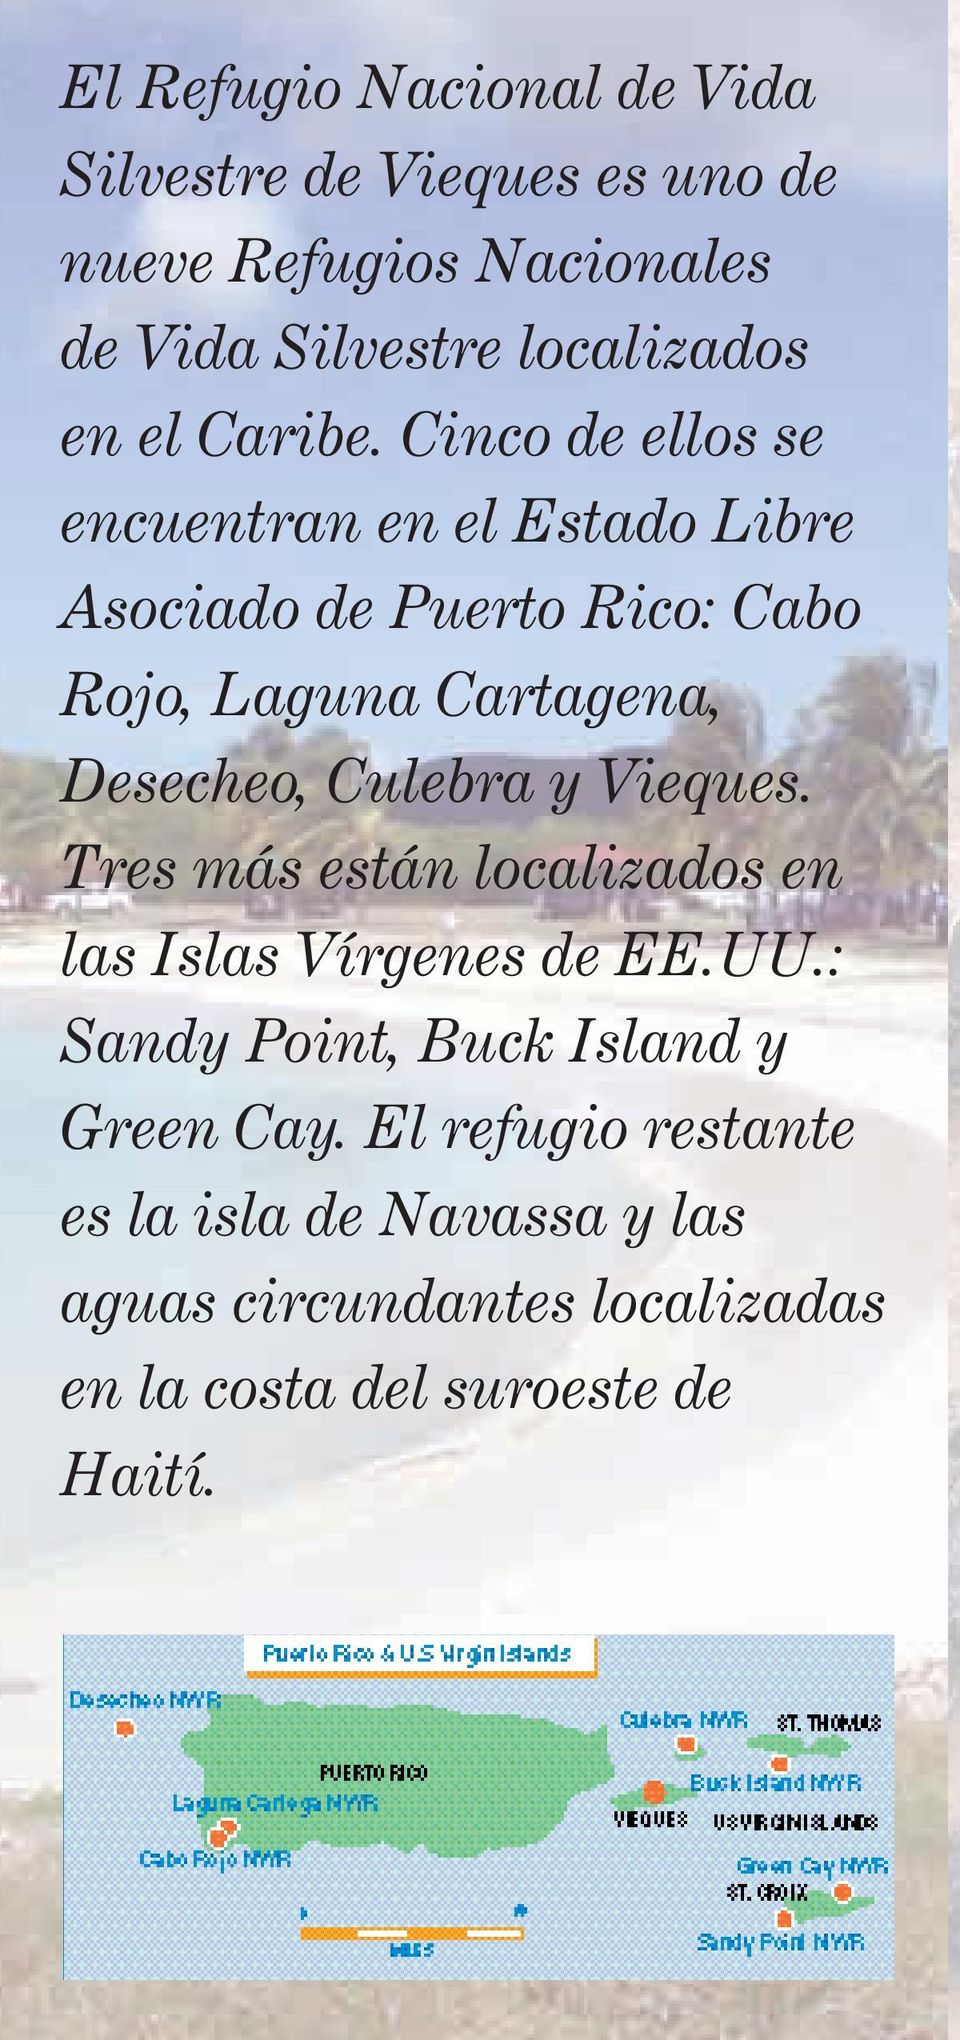 Cinco de ellos se encuentran en el Estado Libre Asociado de Puerto Rico: Cabo Rojo, Laguna Cartagena, Desecheo,